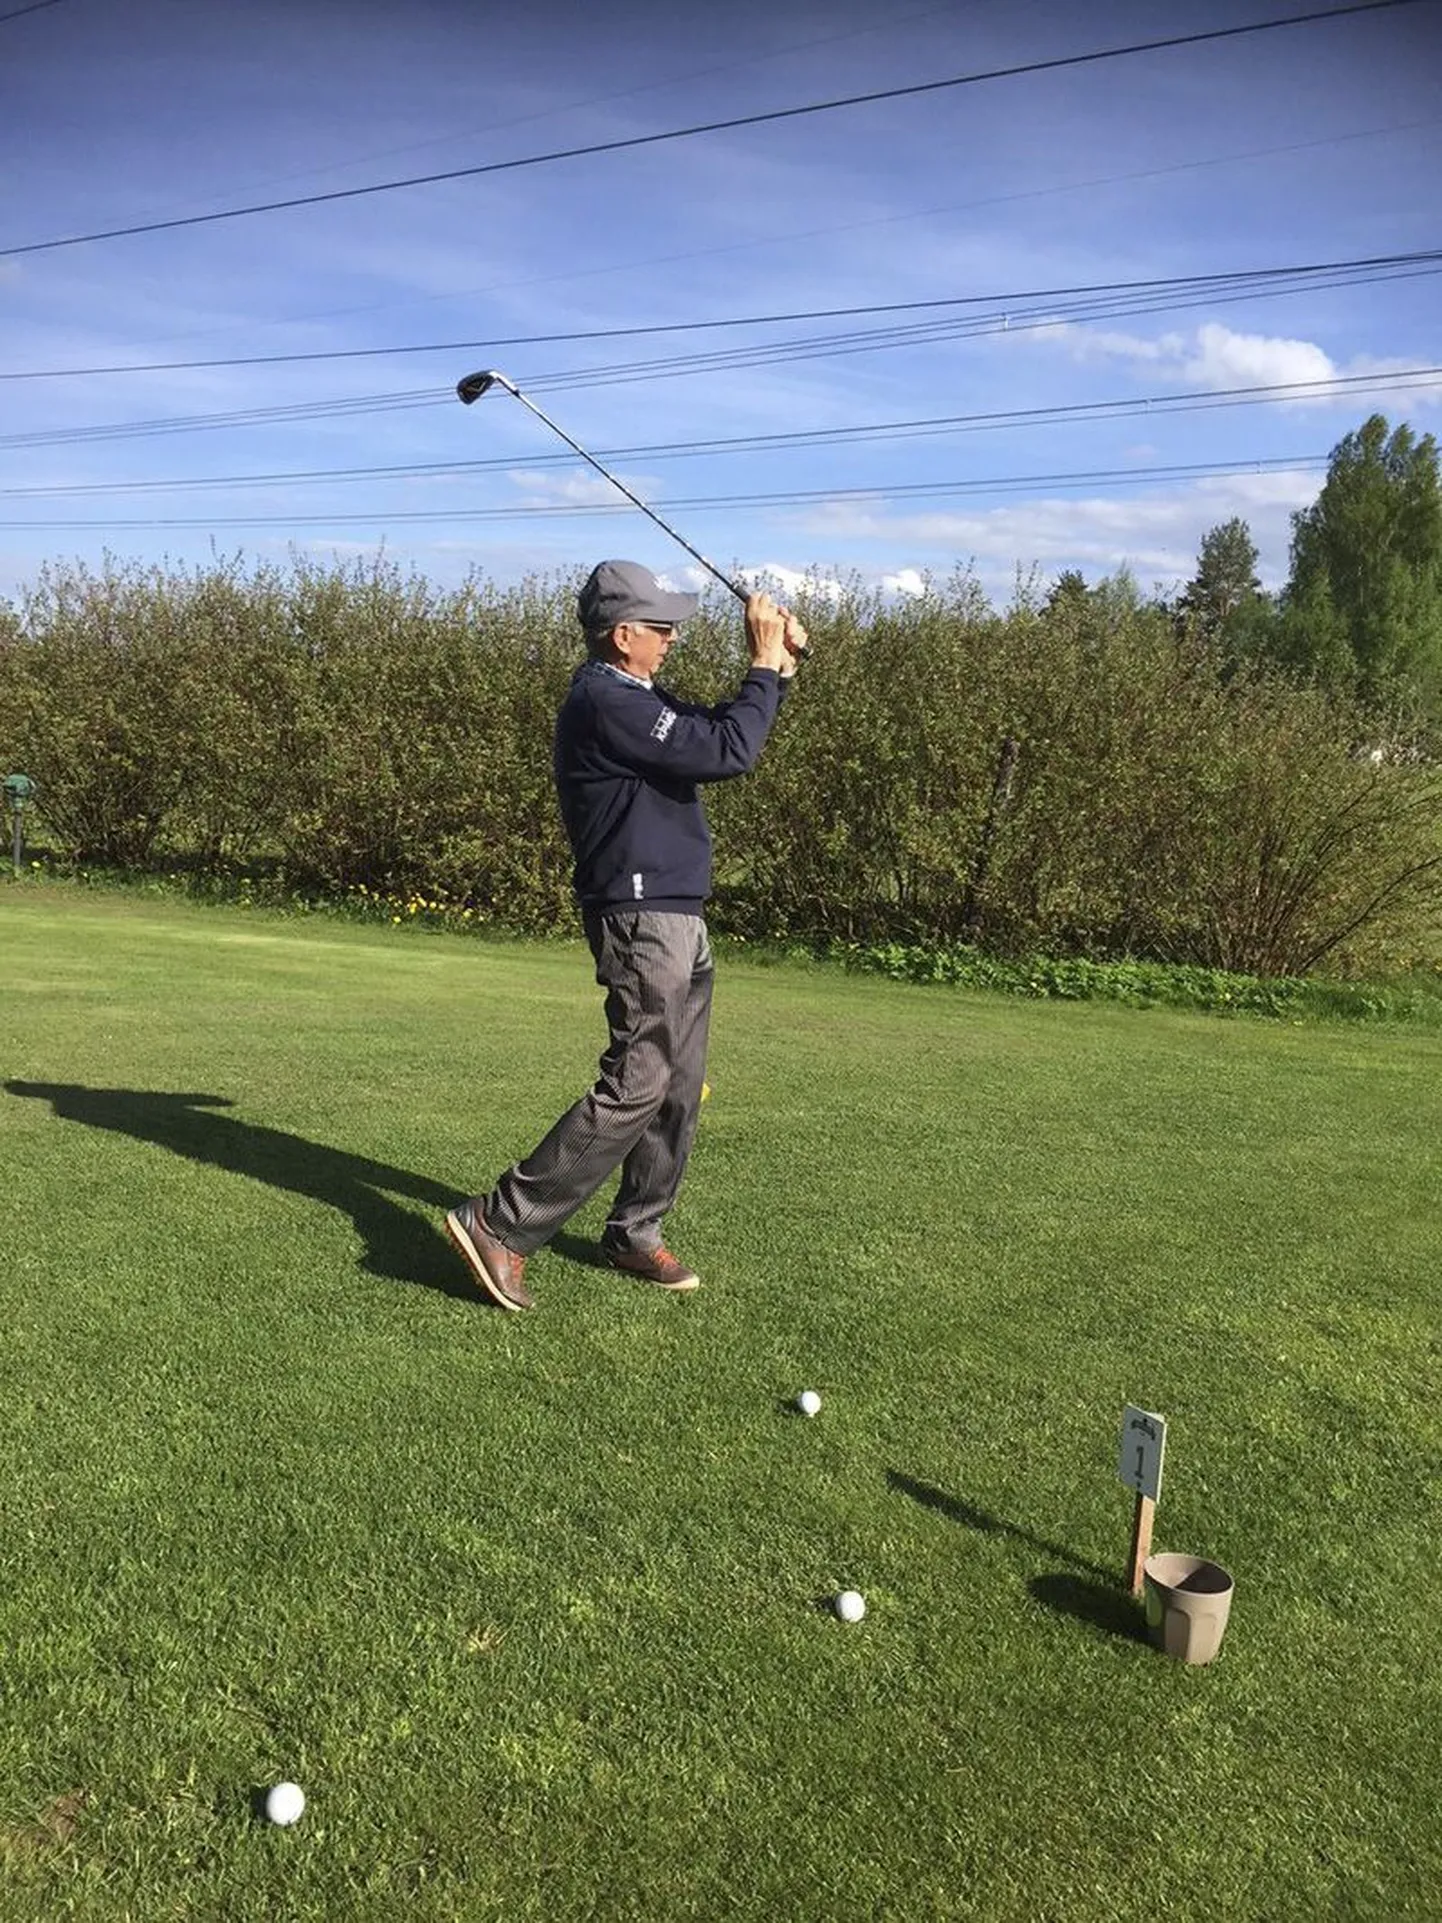 Rein Auväärt on ilmselt esimene eestlane, kes üldse golfi mängima hakkas.